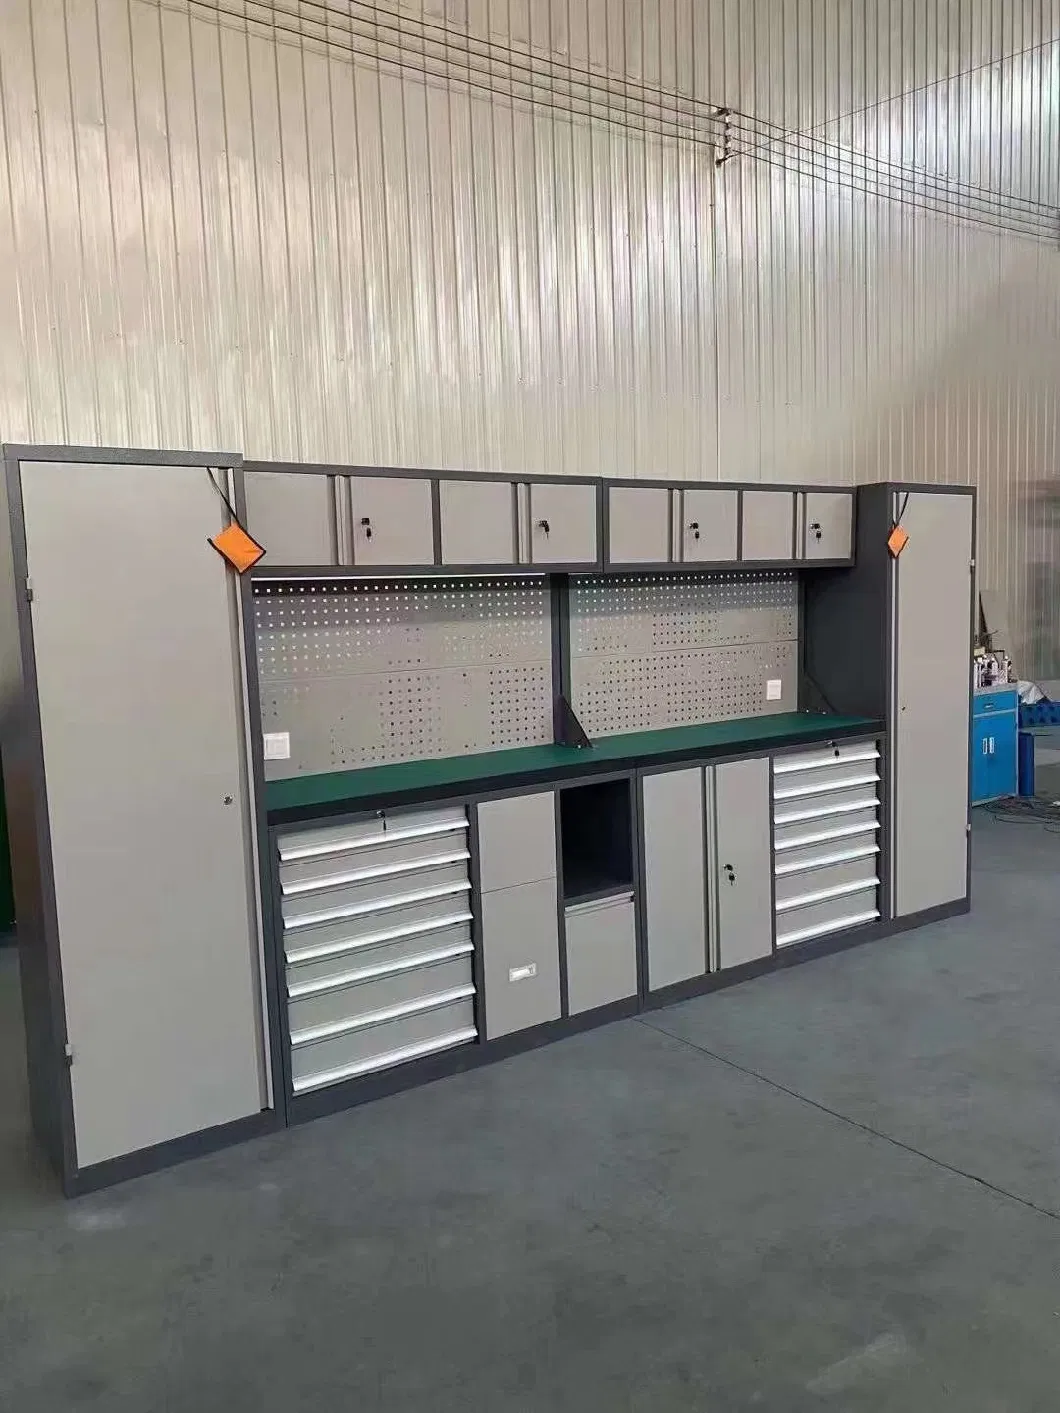 Garage Cabinets /Tool Storage/ Garage Equipment / Garage Organizing/Garage Organization